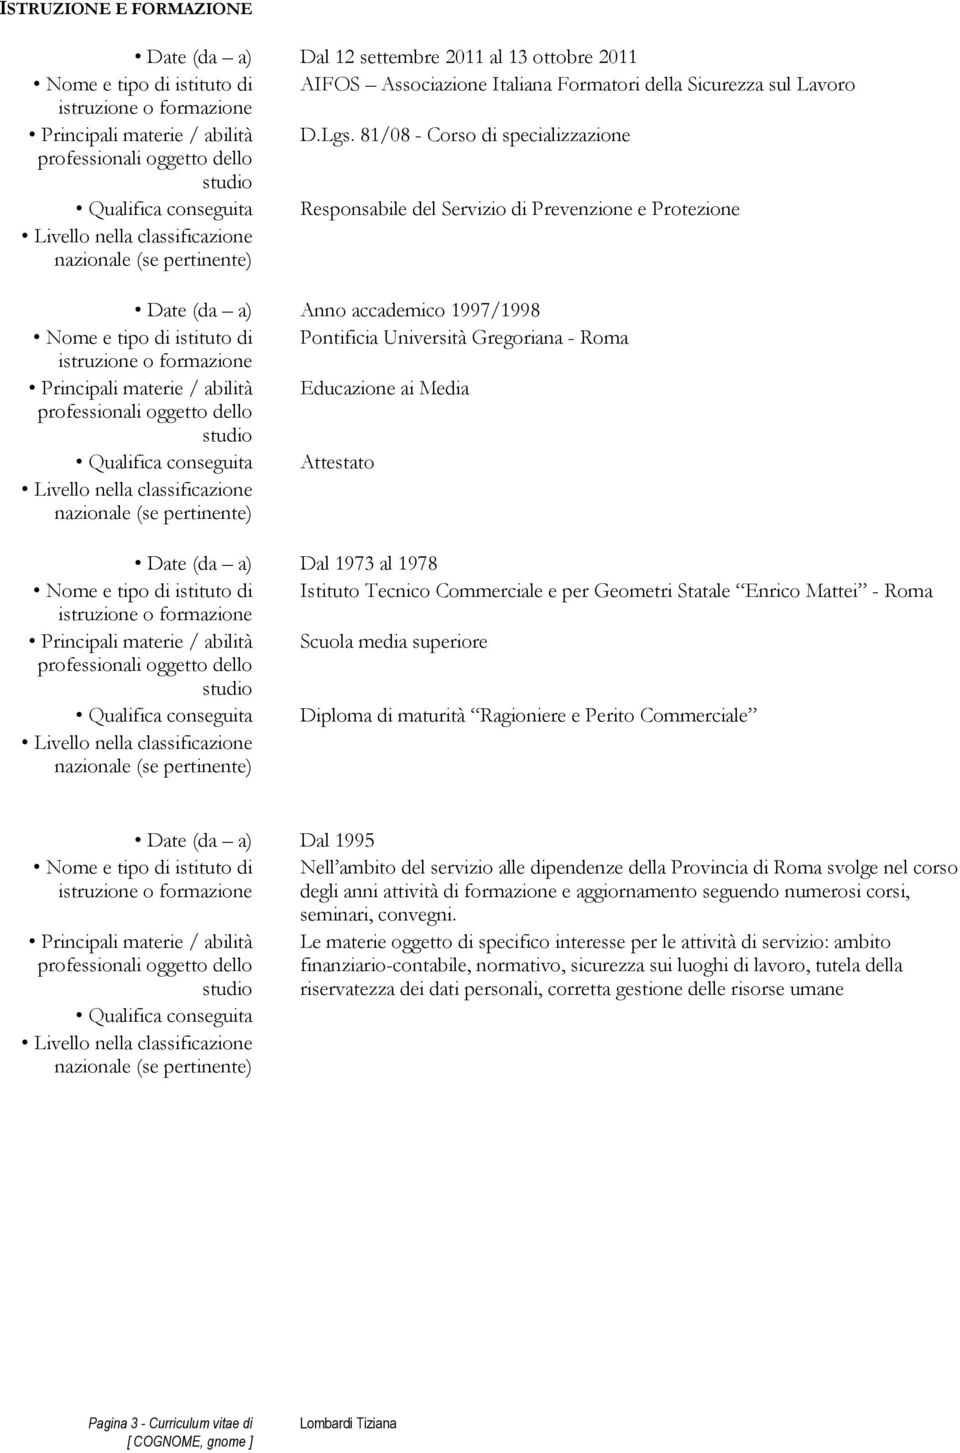 Università Gregoriana - Roma Principali materie / abilità Educazione ai Media Qualifica conseguita Attestato Date (da a) Dal 1973 al 1978 Nome e tipo di istituto di Istituto Tecnico Commerciale e per